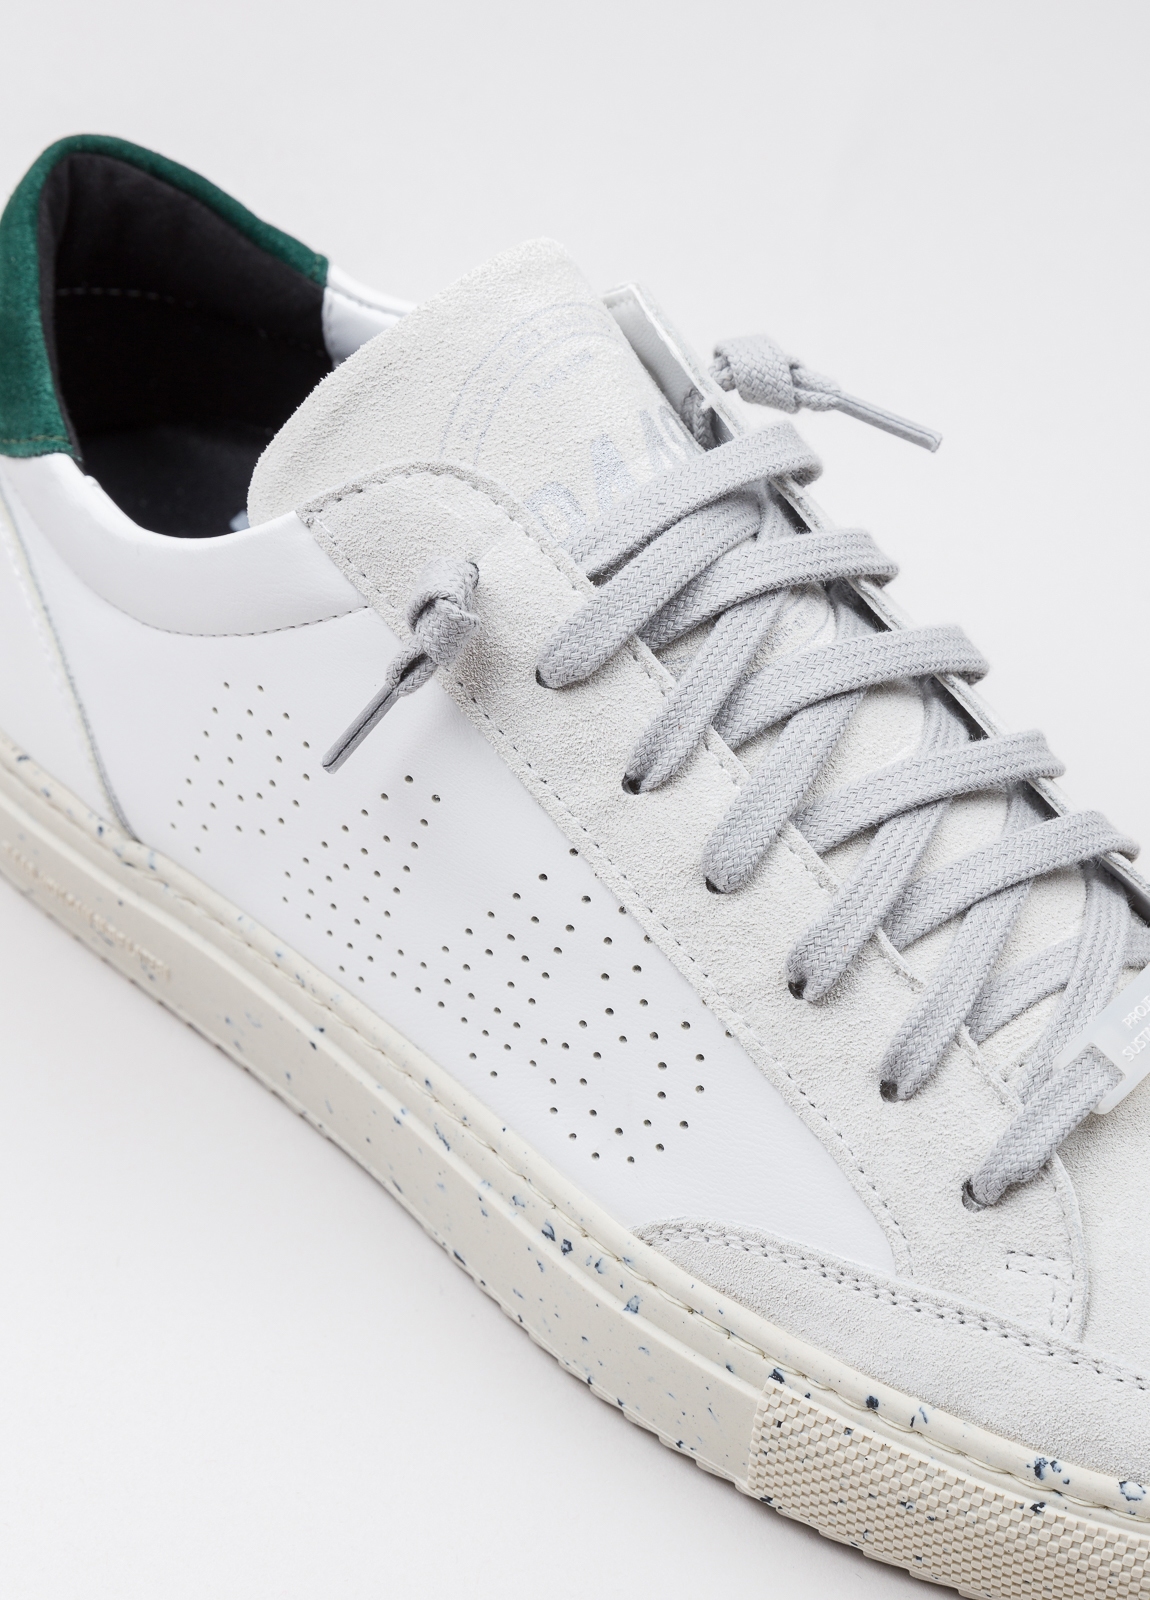 Sneaker P448 blanca y verde - Ítem5